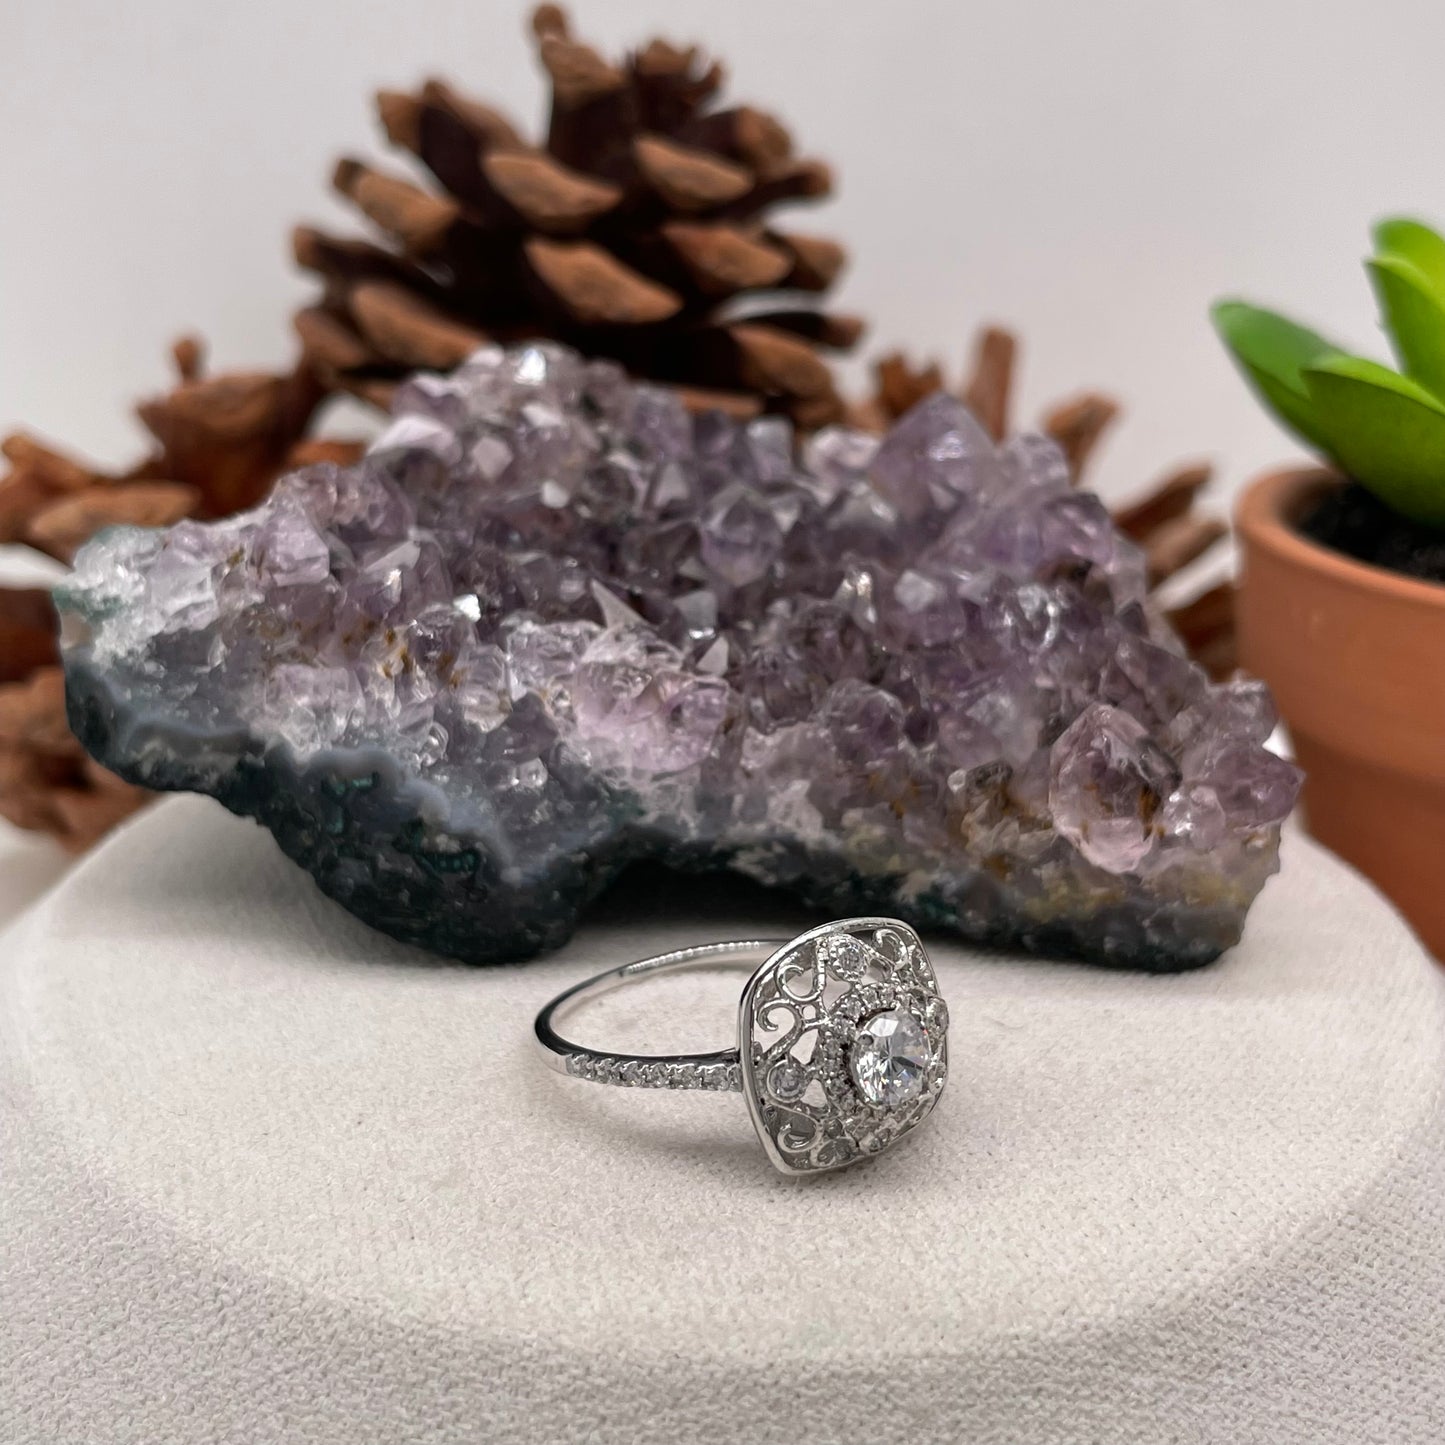 0.56 Carat Round Brilliant Lab Created / Naturel Diamond Engagement Ring Diamond Ring